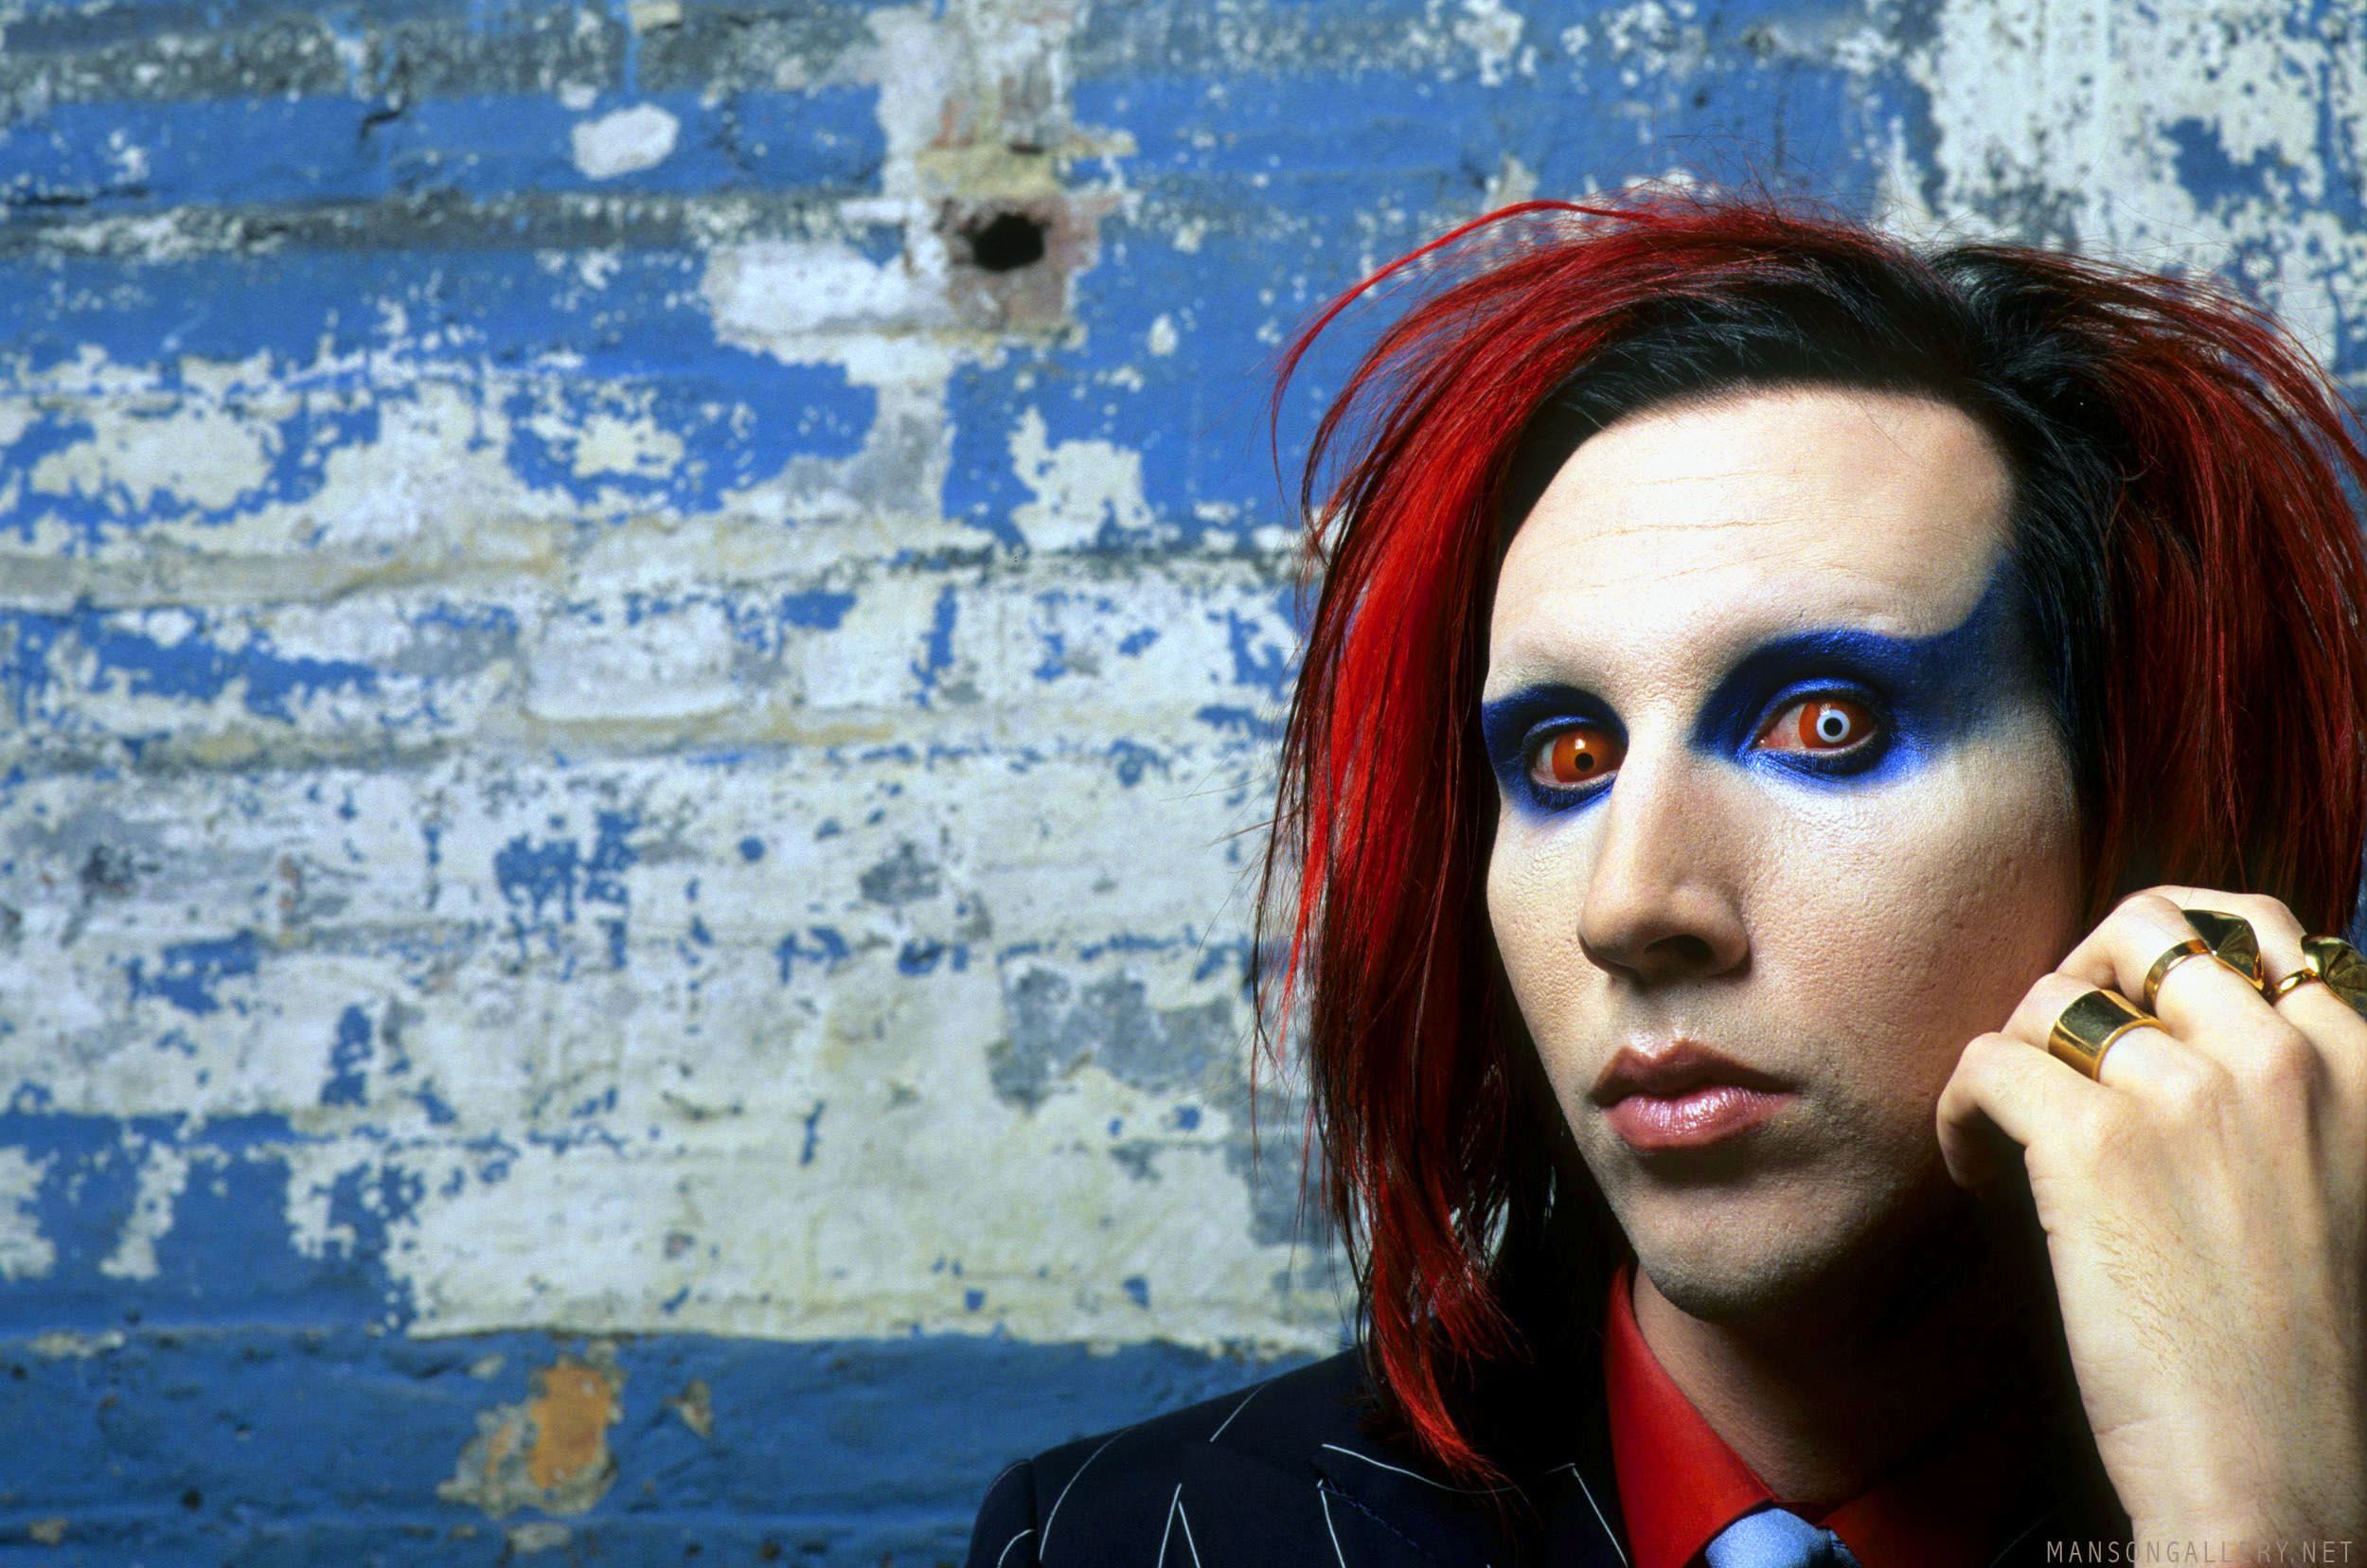 Marilyn Manson Industrial Metal Rock Heavy Shock Gothic Glam